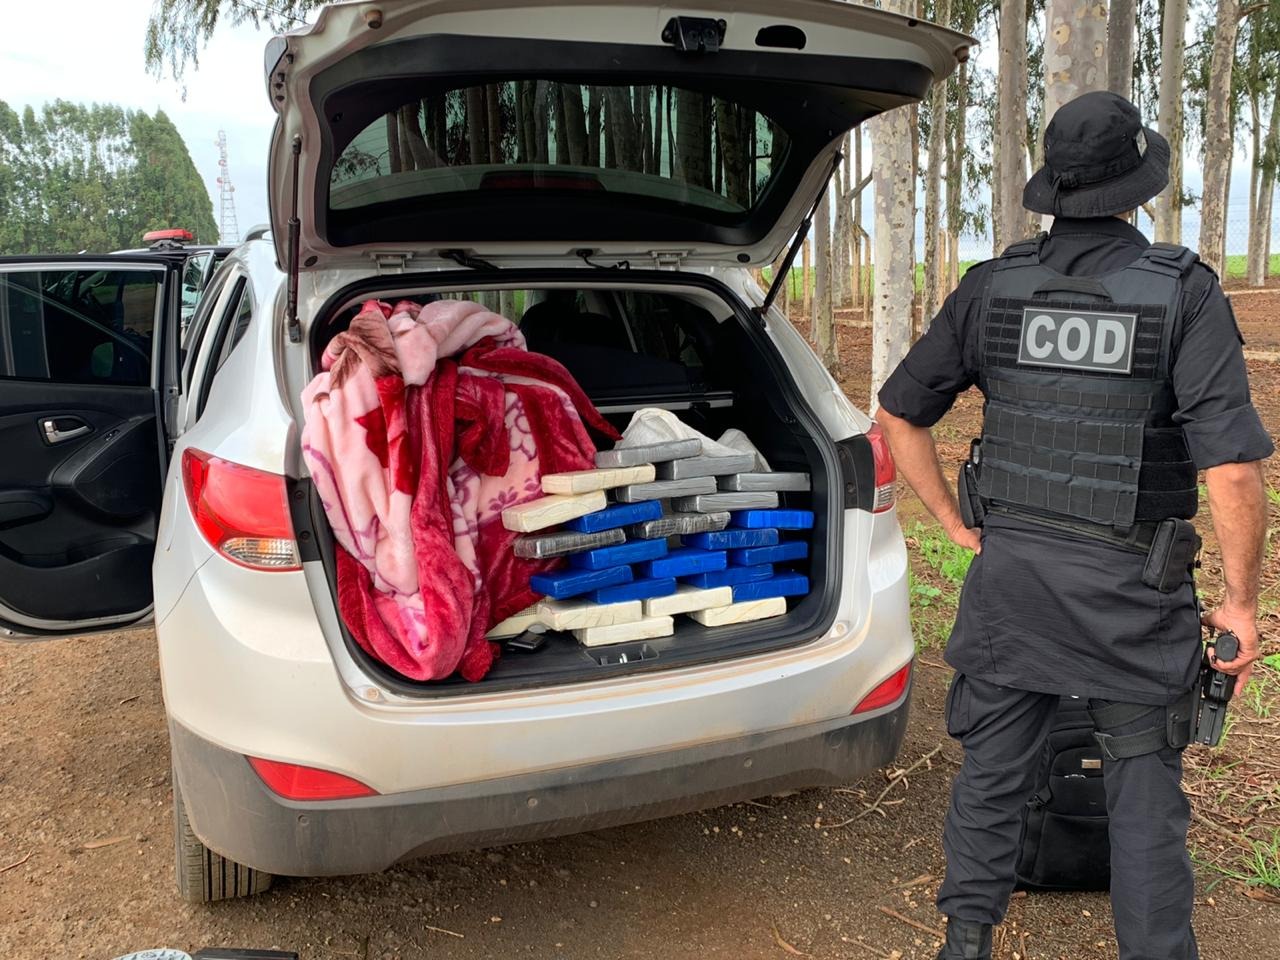 Um homem foi preso suspeito de transportar carga de cocaína avaliada em R$ 900 mil. O caso aconteceu nesta quinta-feira (28), na zona rural de Jataí. (Foto: Divulgação/PM)